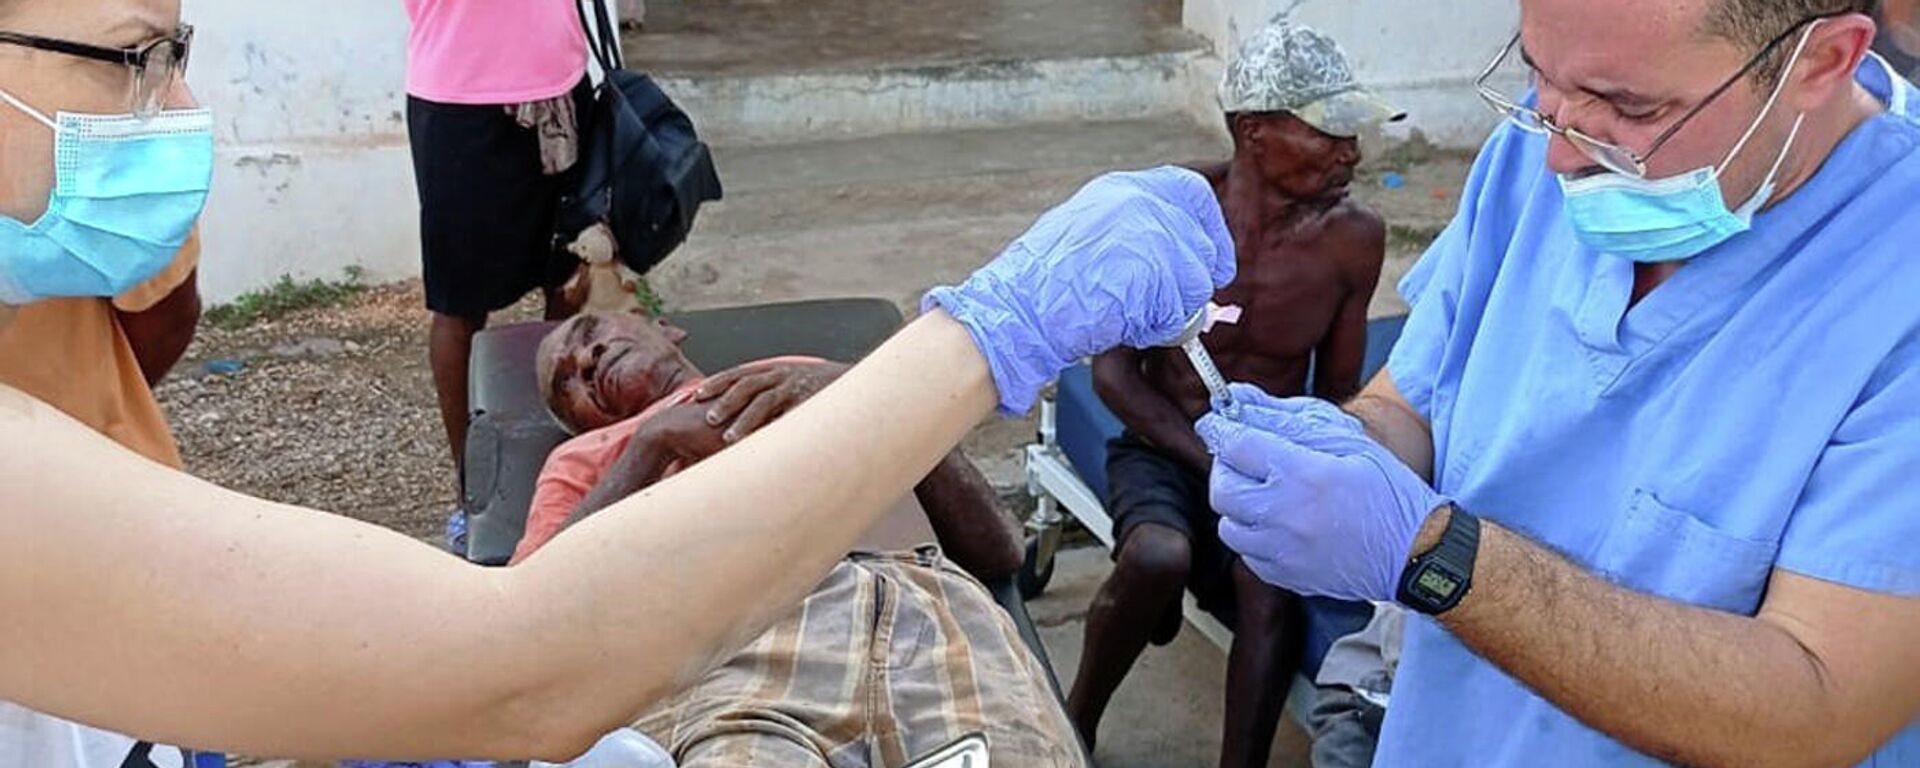 Brigada médica cubana en Haití brinda atención de primeros auxilios a damnificados por terremoto - Sputnik Mundo, 1920, 22.08.2021